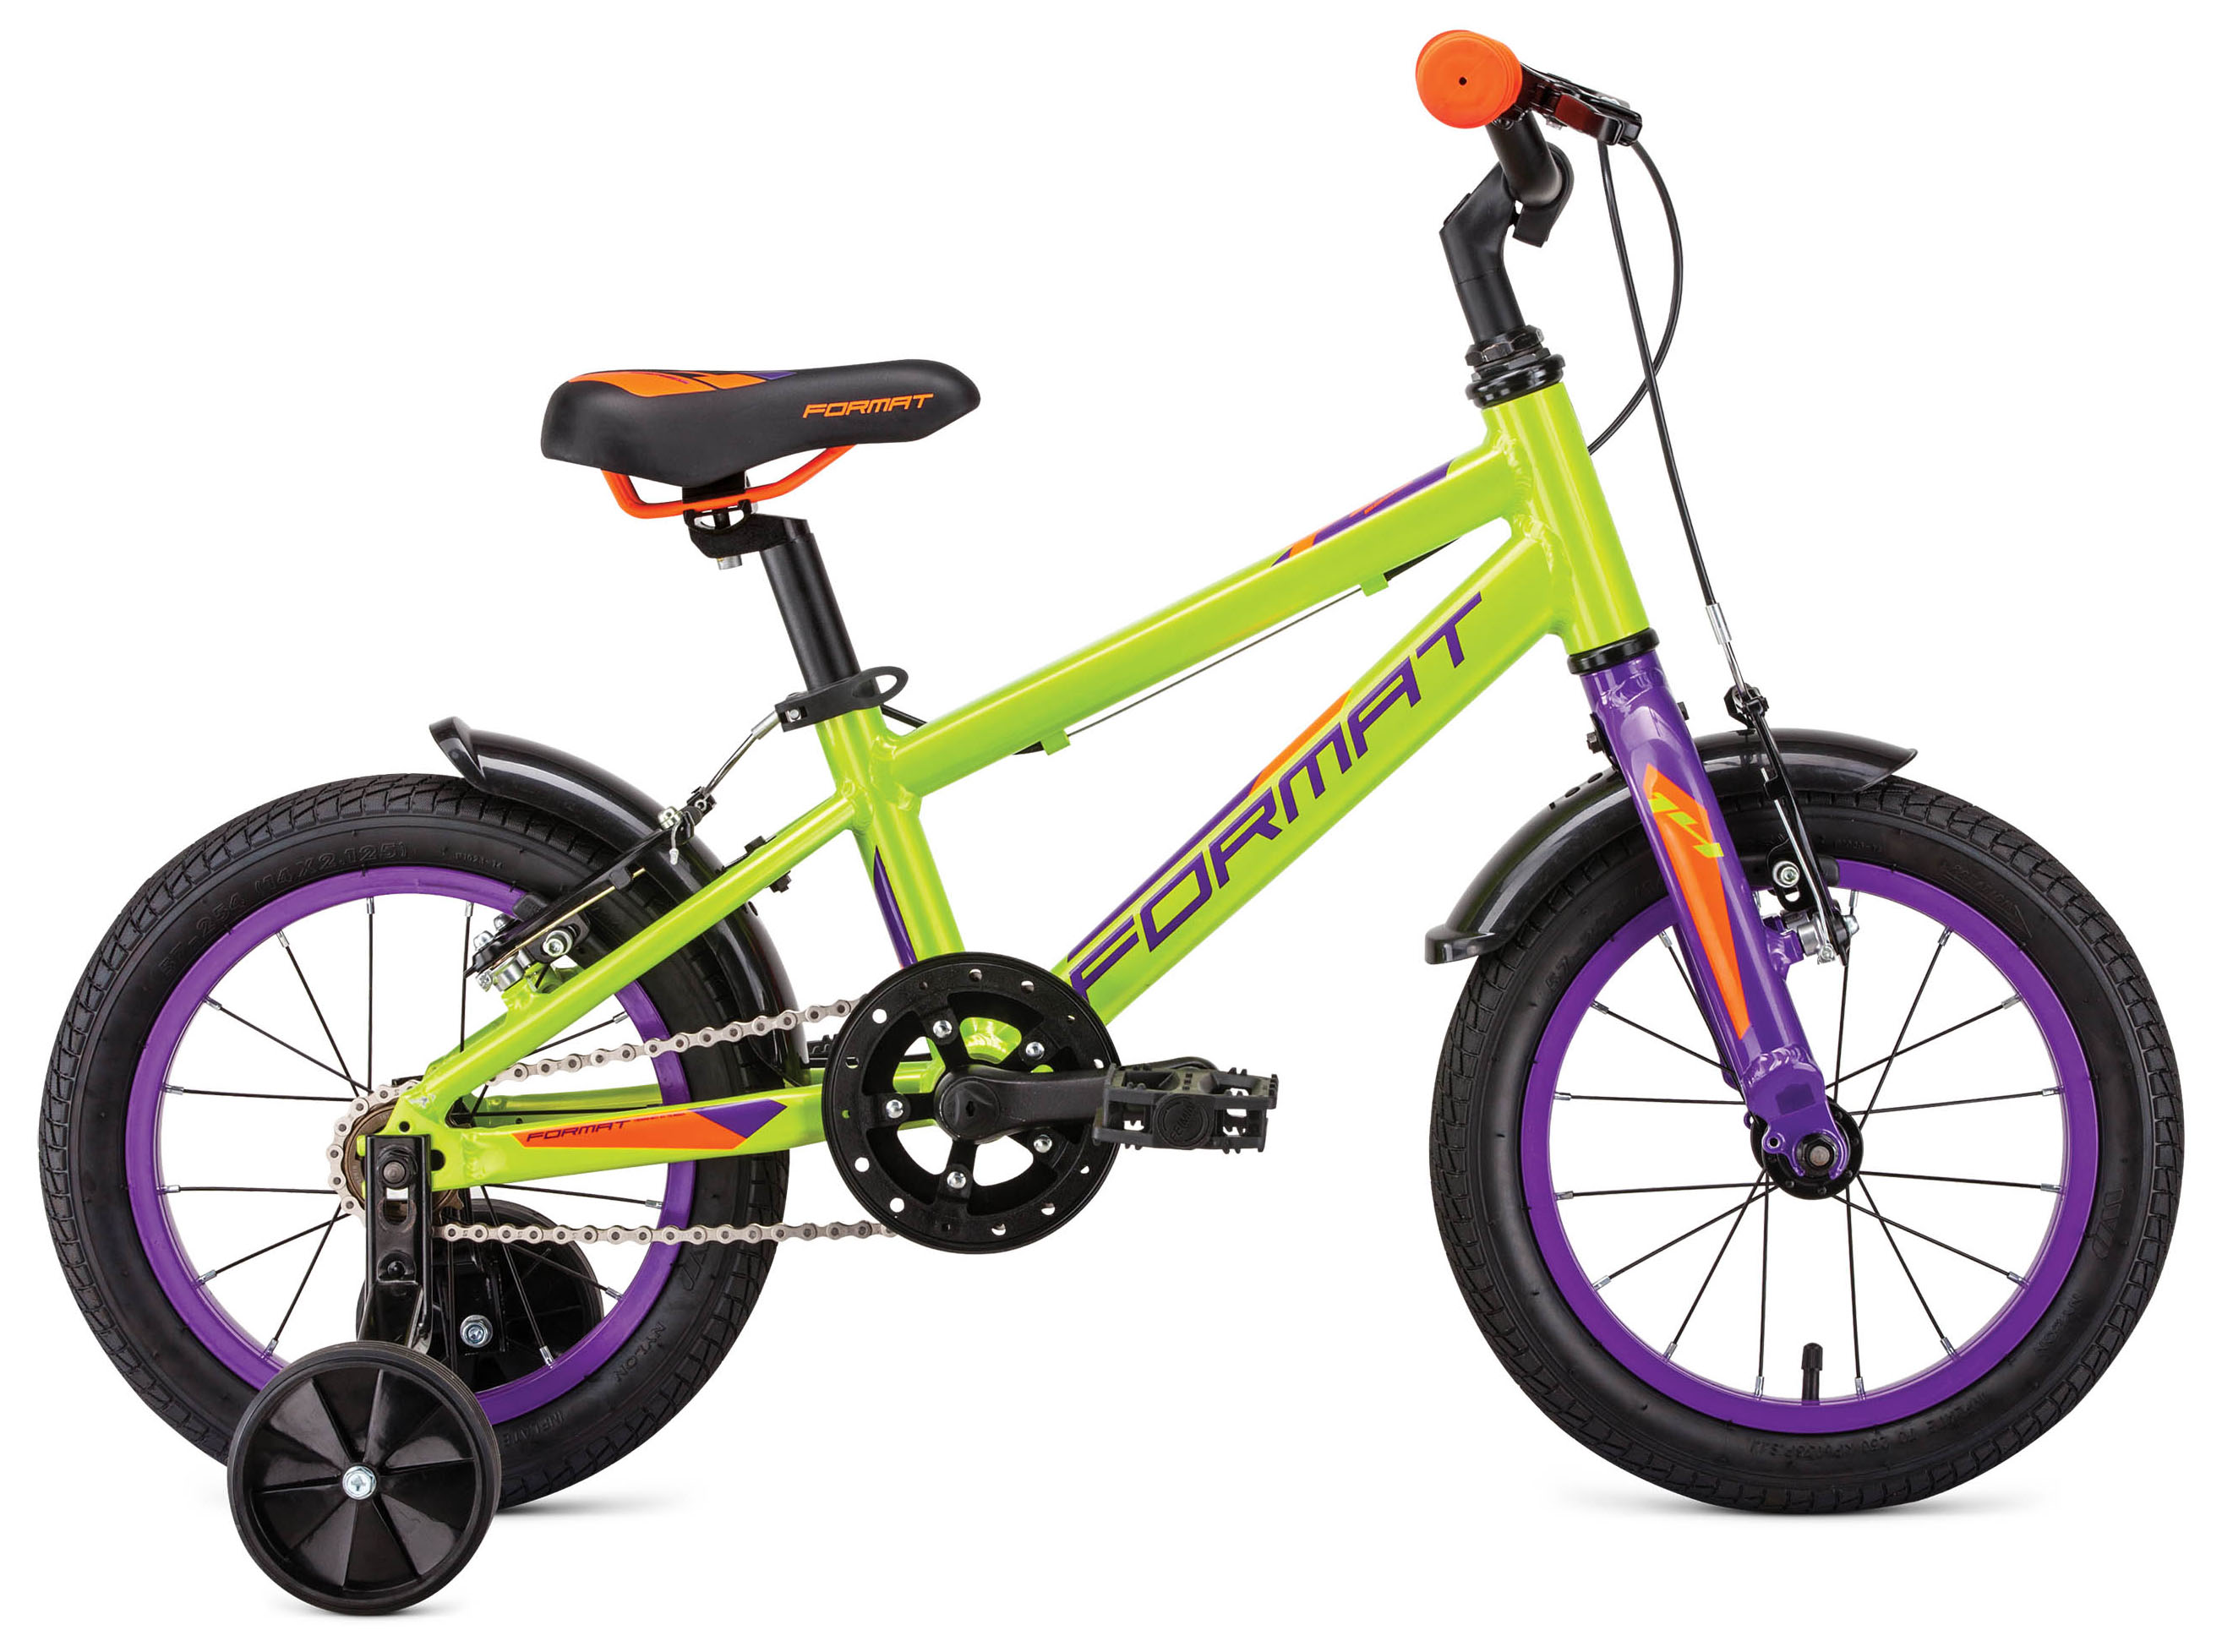  Отзывы о Детском велосипеде Format Kids 14 2019